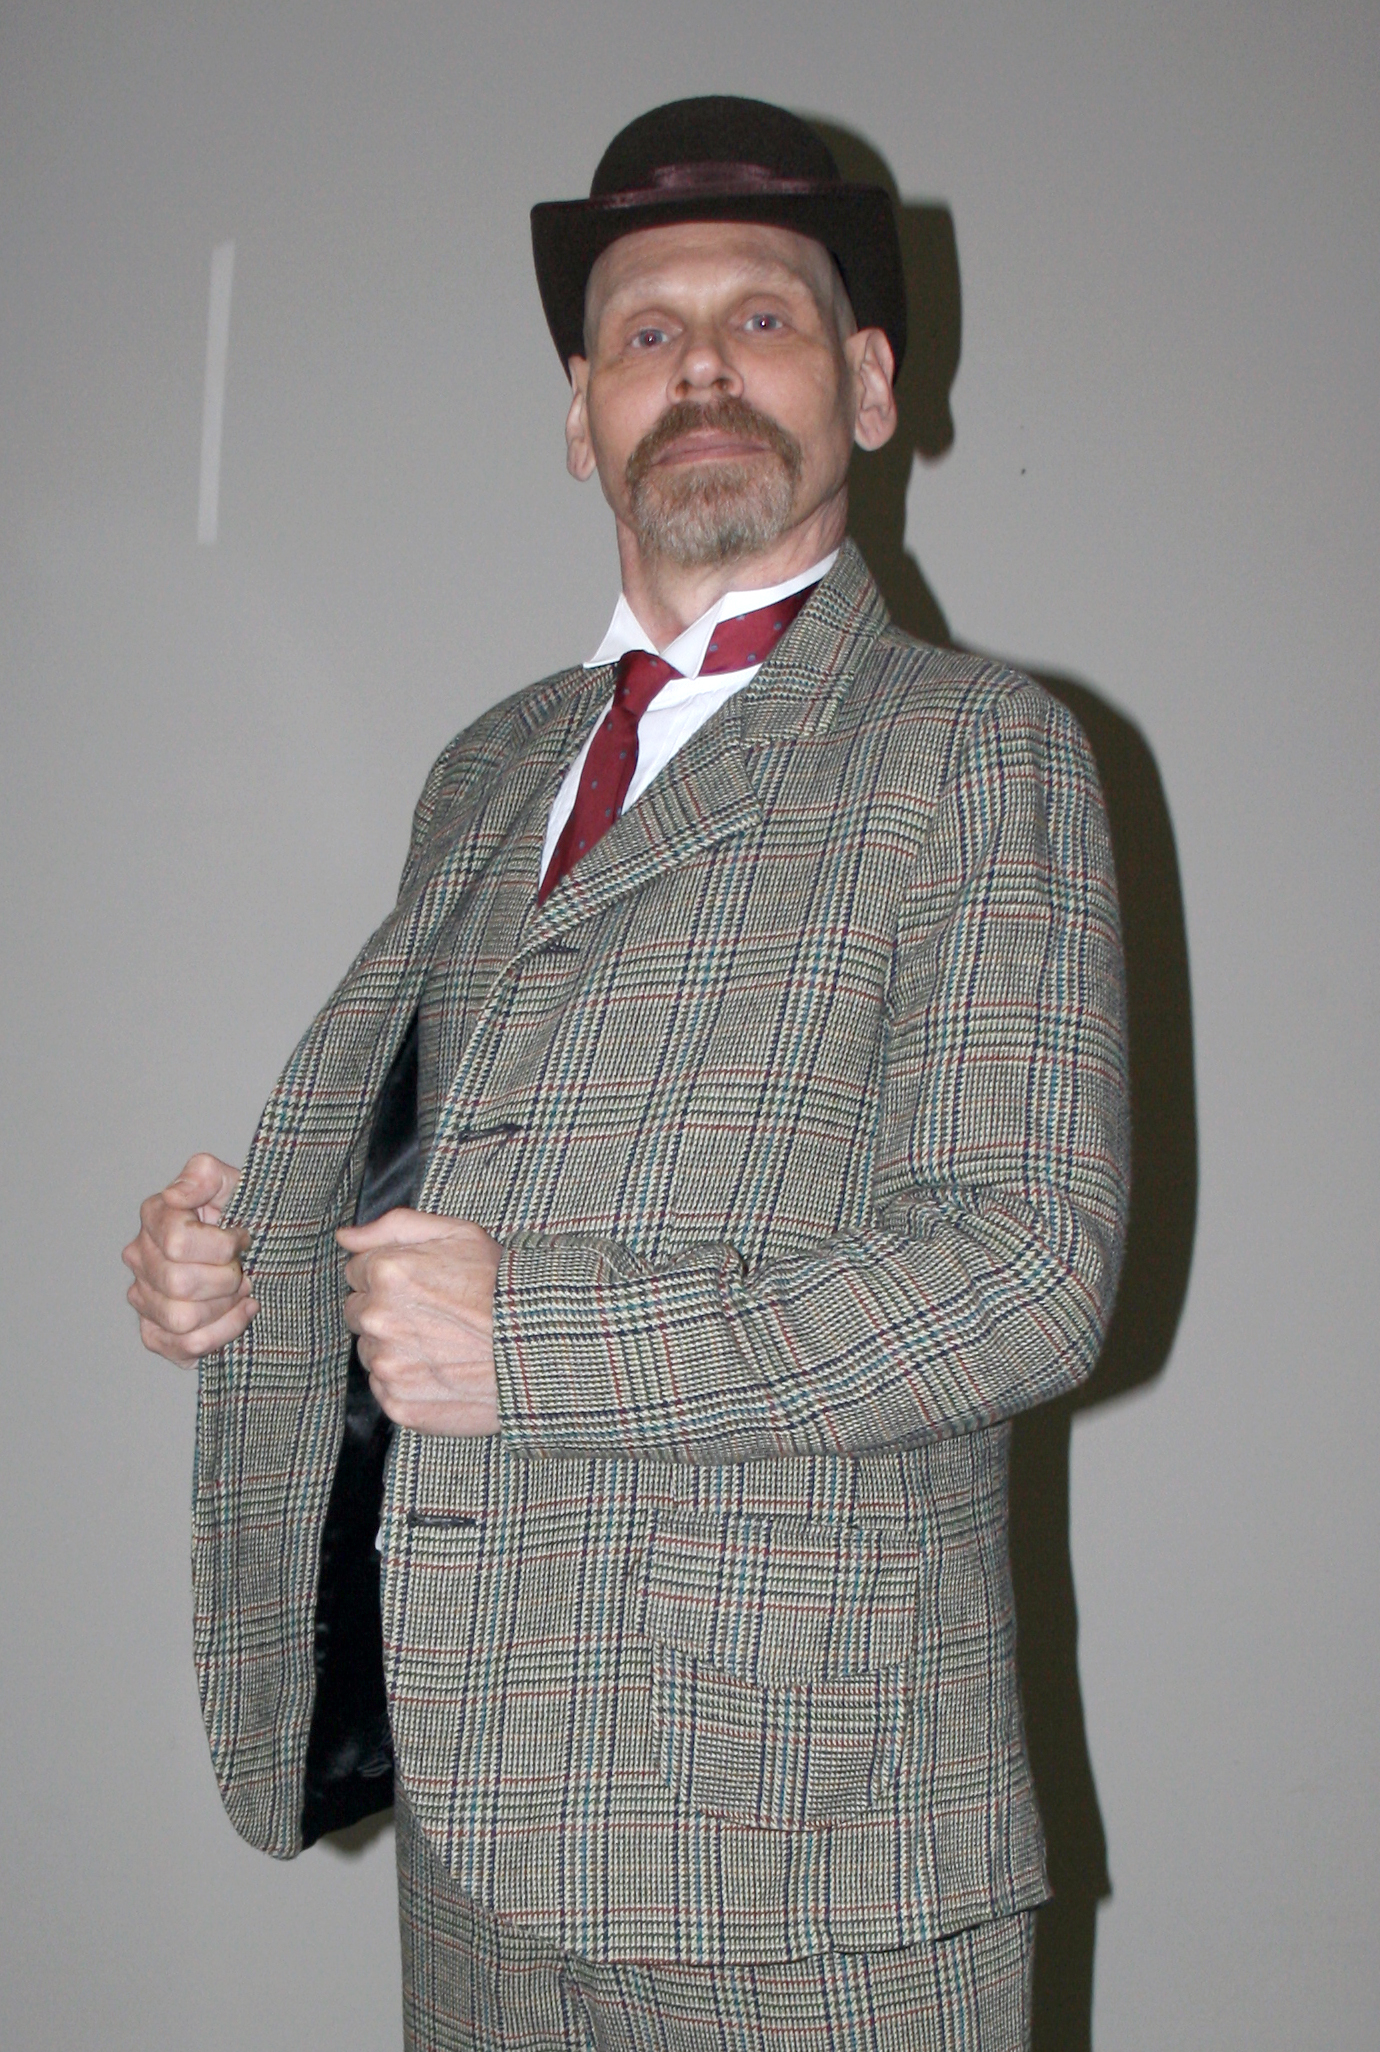 Bert Furioli as Dr. Watson